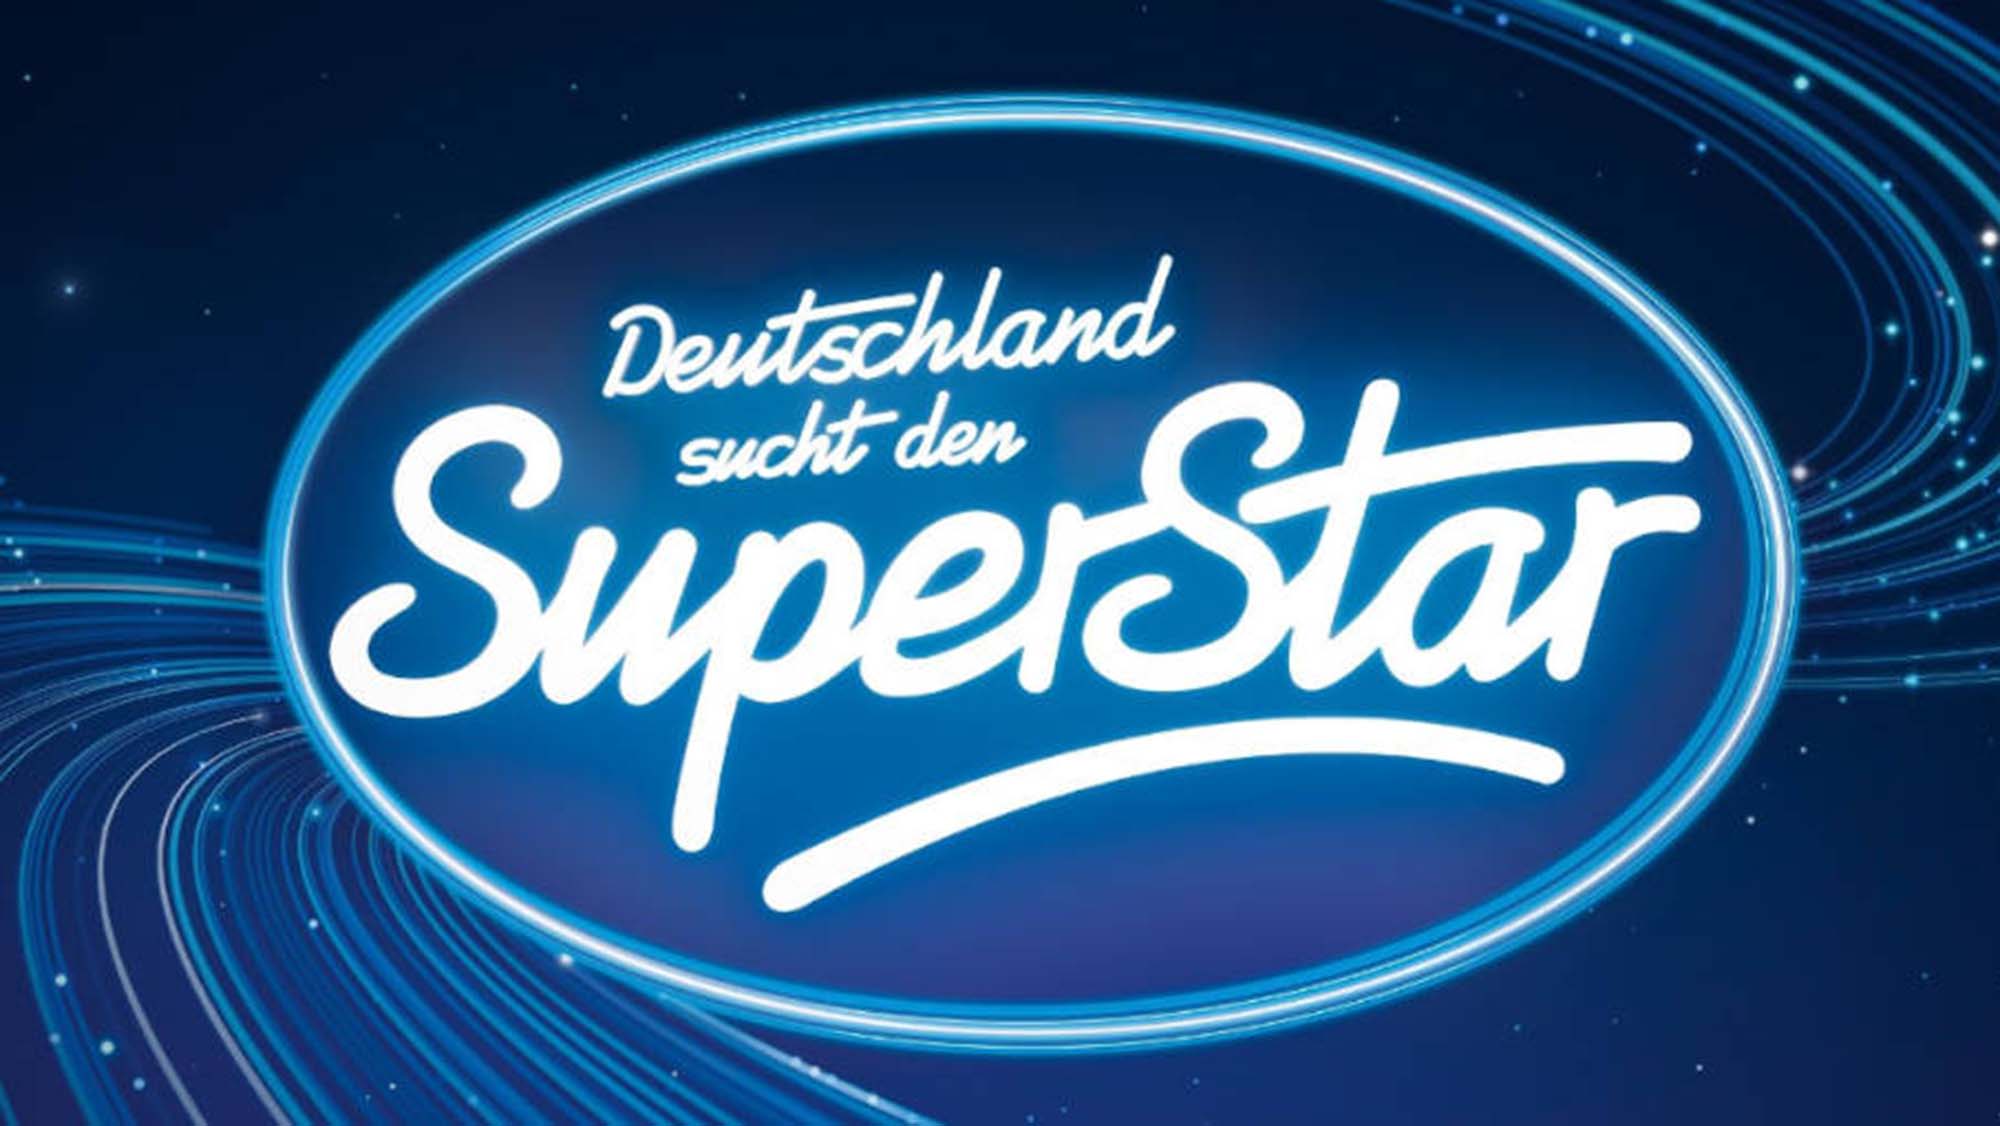 dsds_rtl_deutschland-sucht-den-superstar